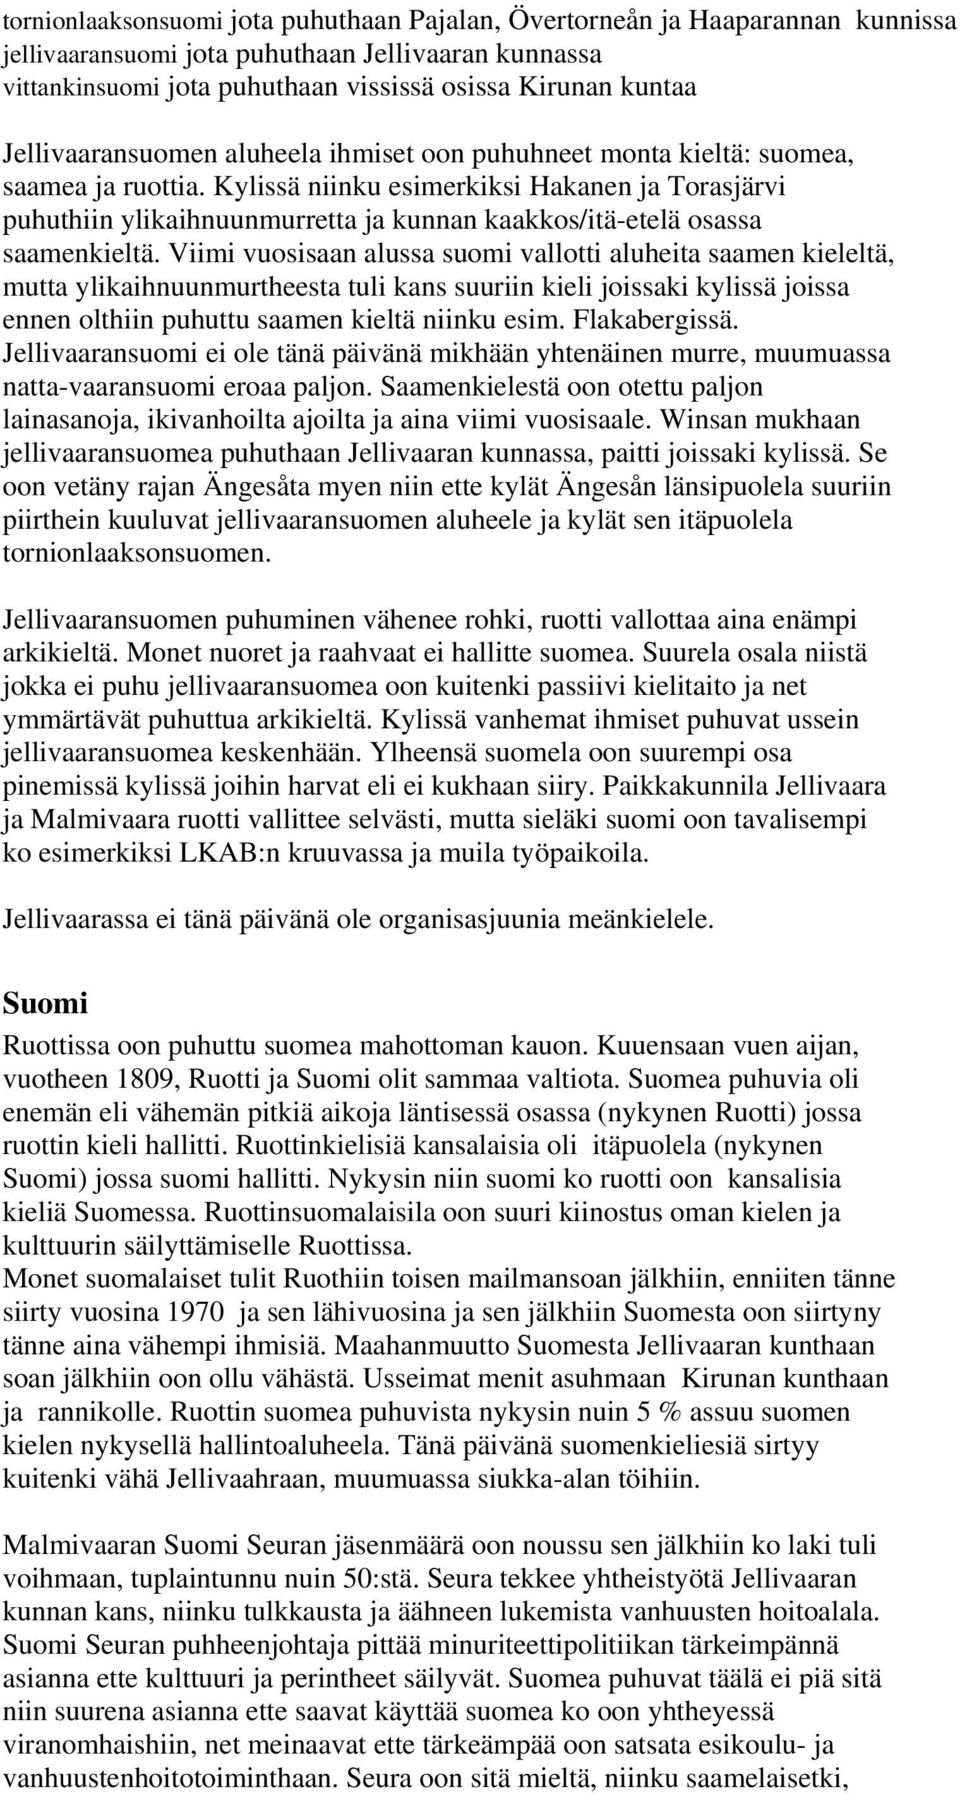 Kylissä niinku esimerkiksi Hakanen ja Torasjärvi puhuthiin ylikaihnuunmurretta ja kunnan kaakkos/itä-etelä osassa saamenkieltä.